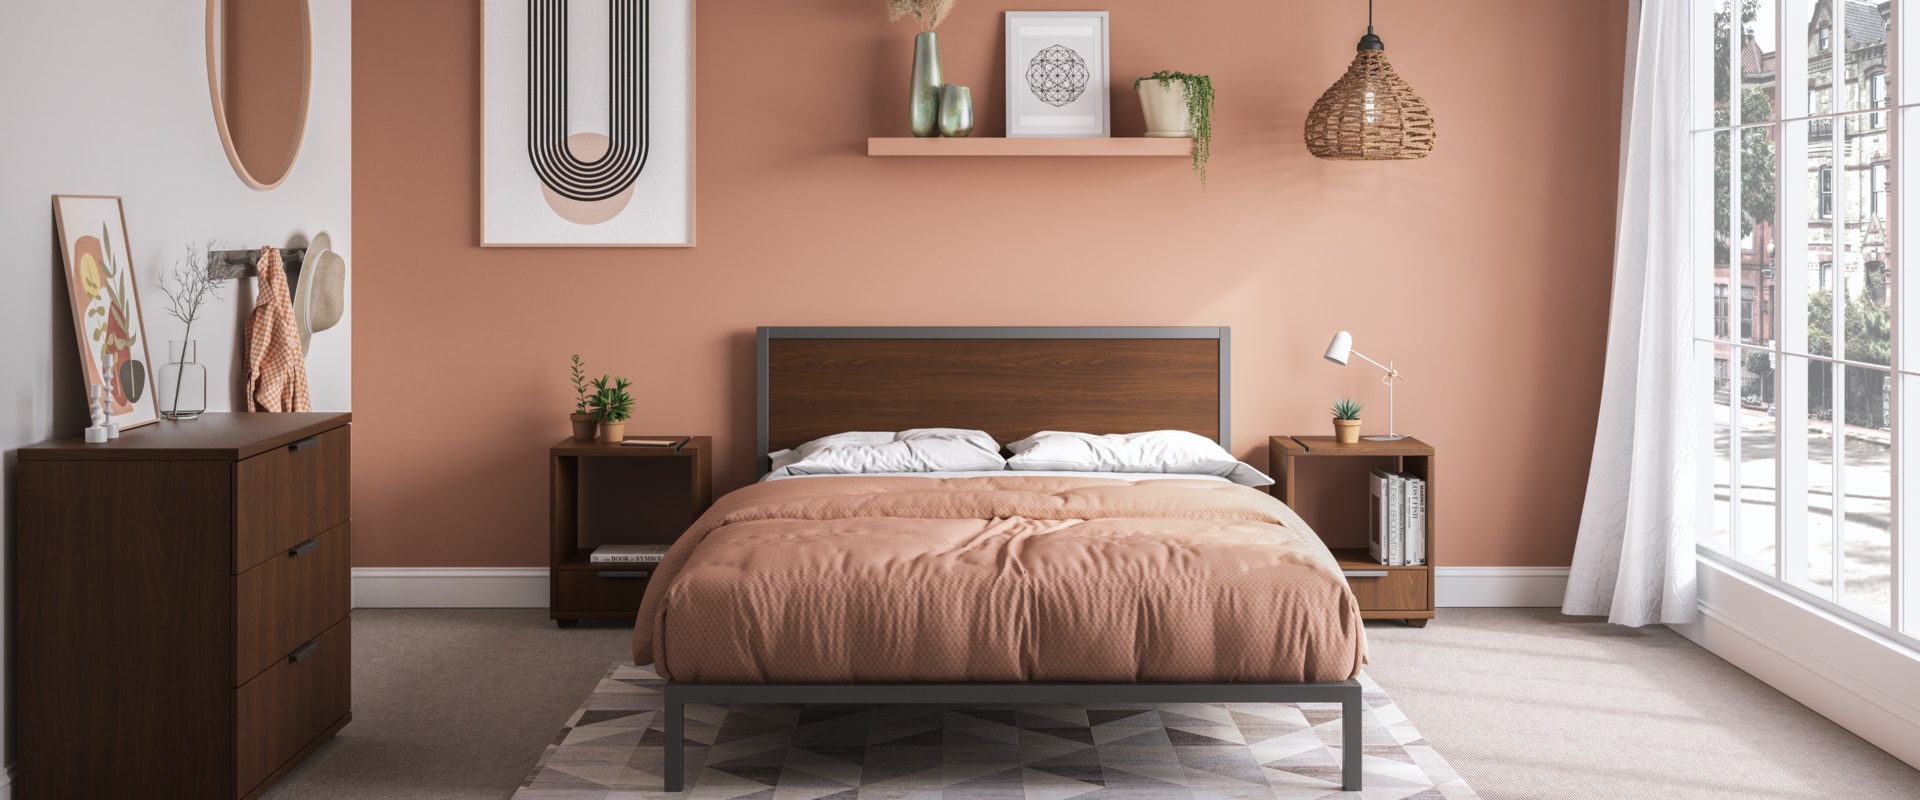 Contemporary 4-Piece Queen Bedroom Set